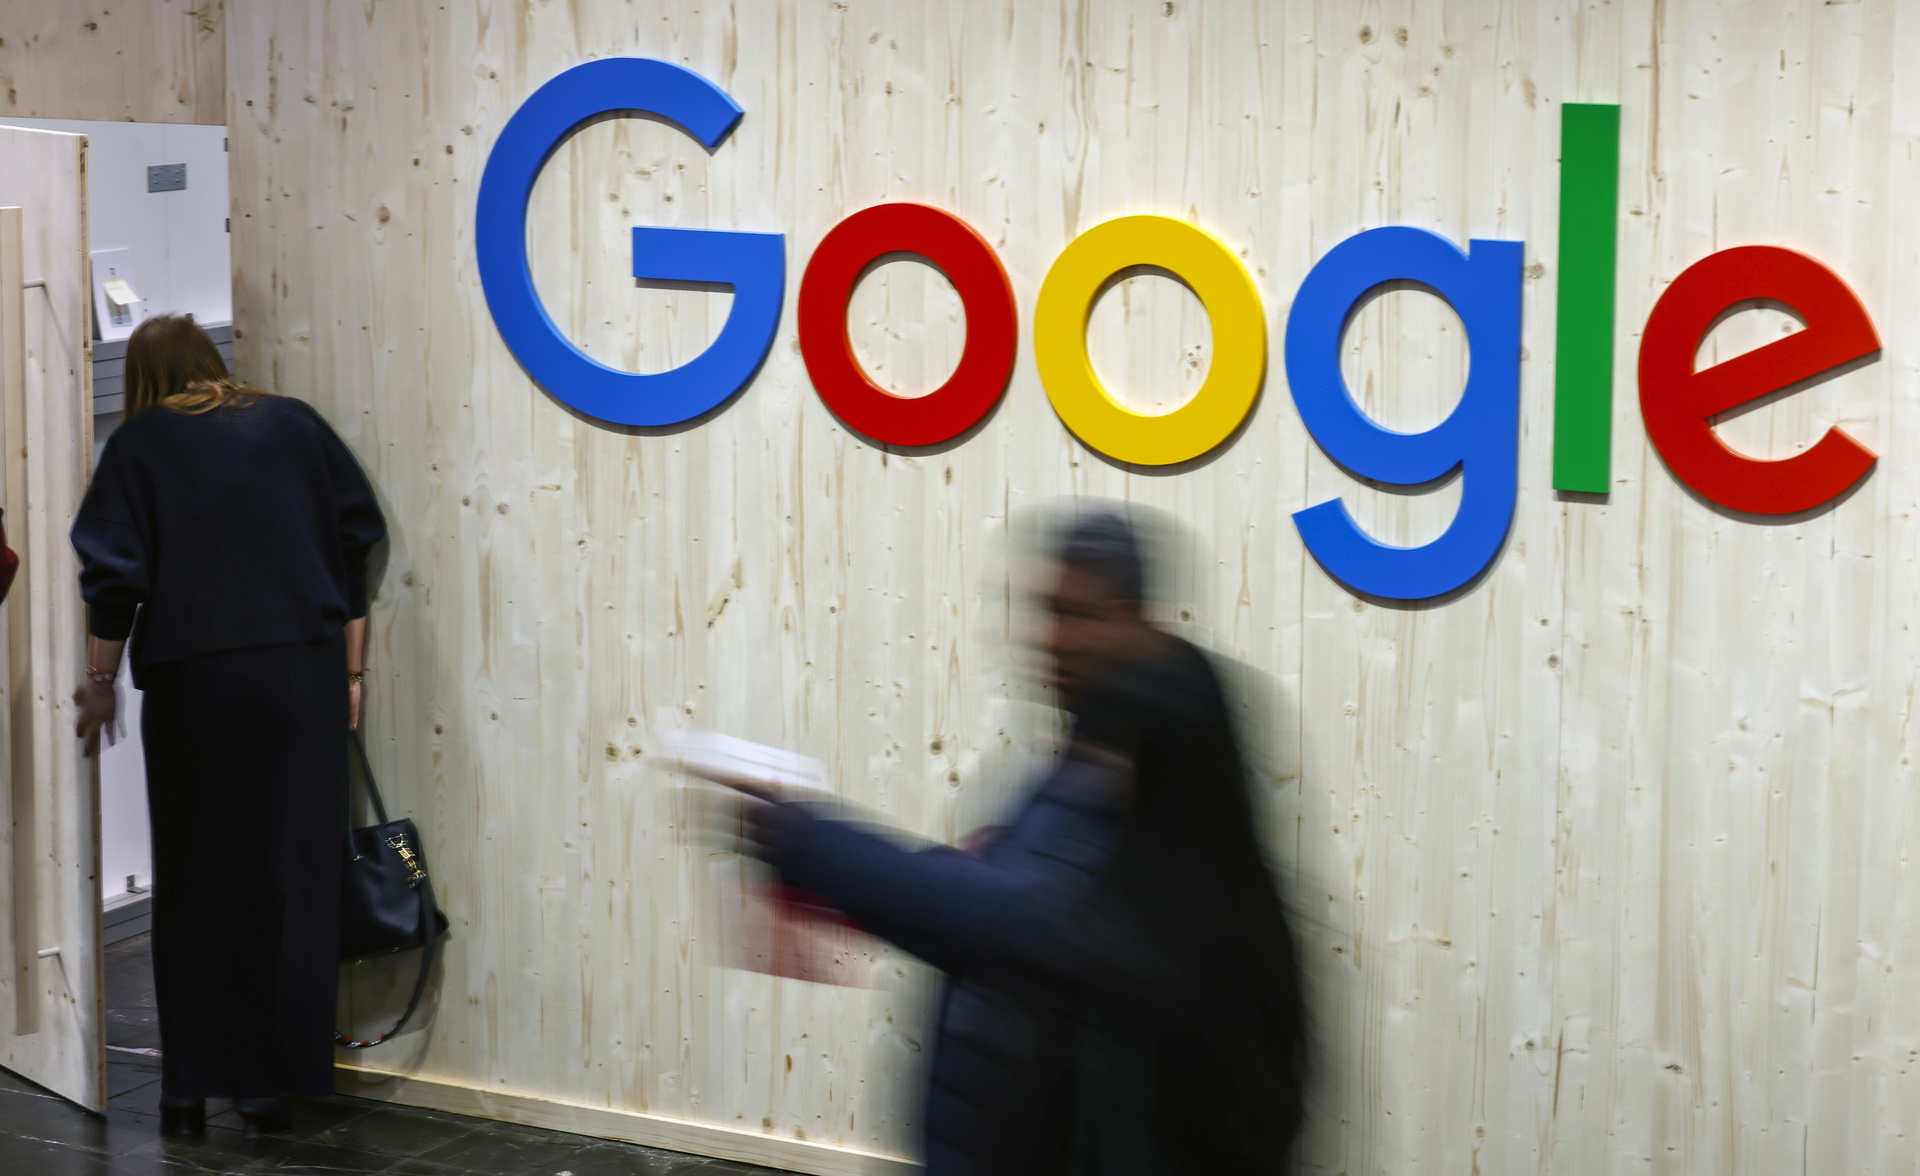 Retrasa Google otra vez plan de eliminación de cookies